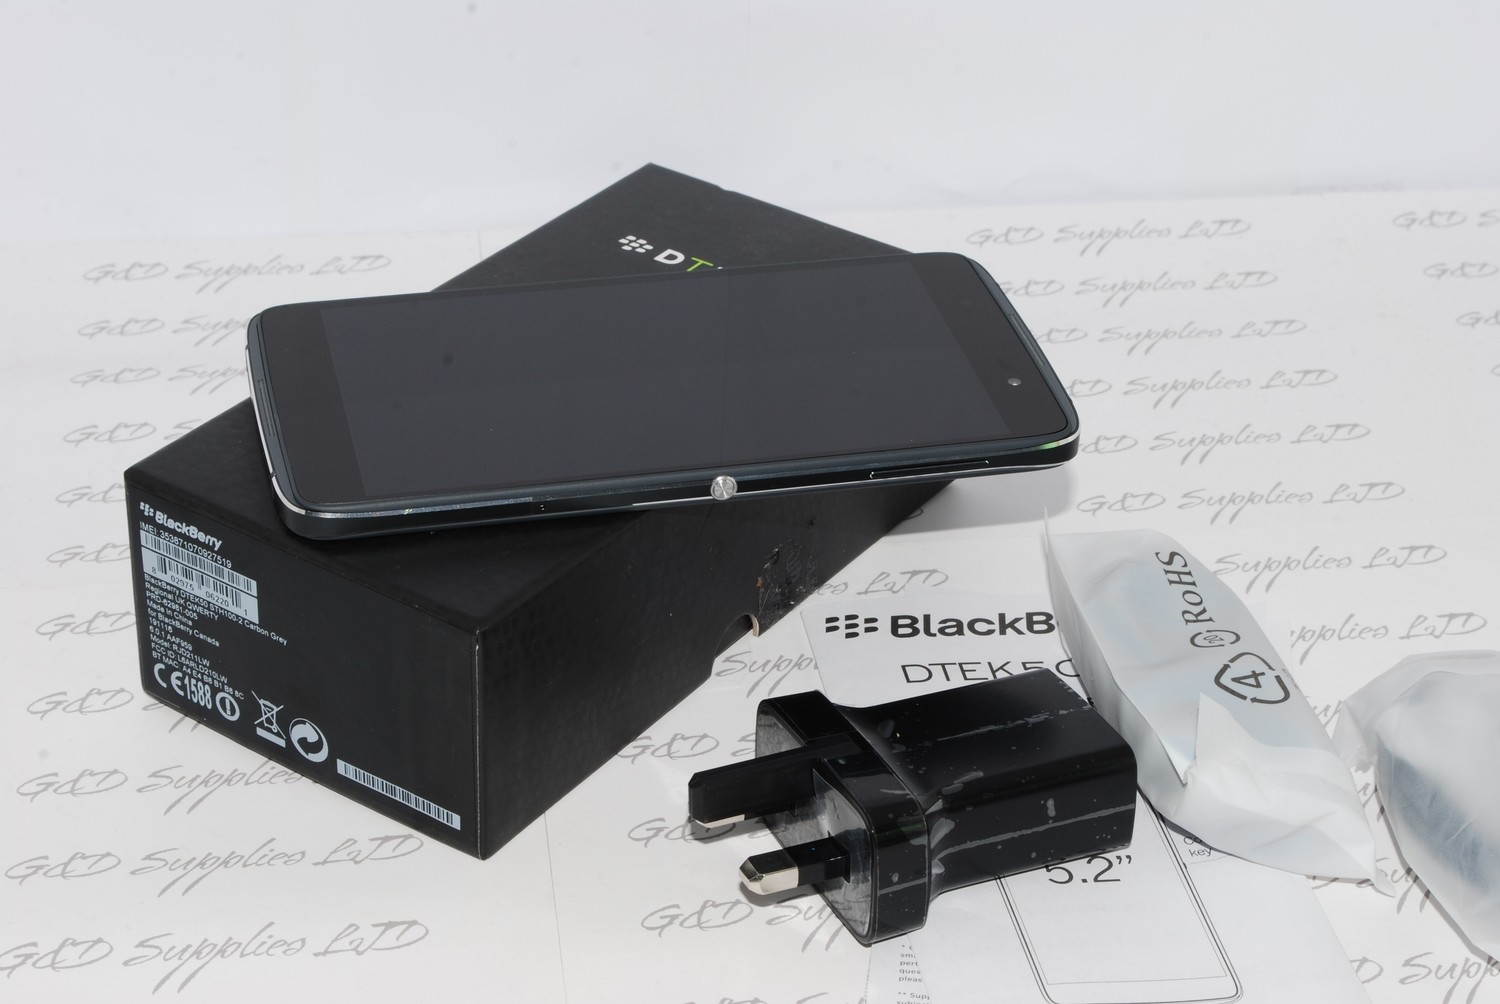 BlackBerry DTEK50 - 16GB - Black (Unlocked) Smartphone SIM-Free Single SIM Smartphone #